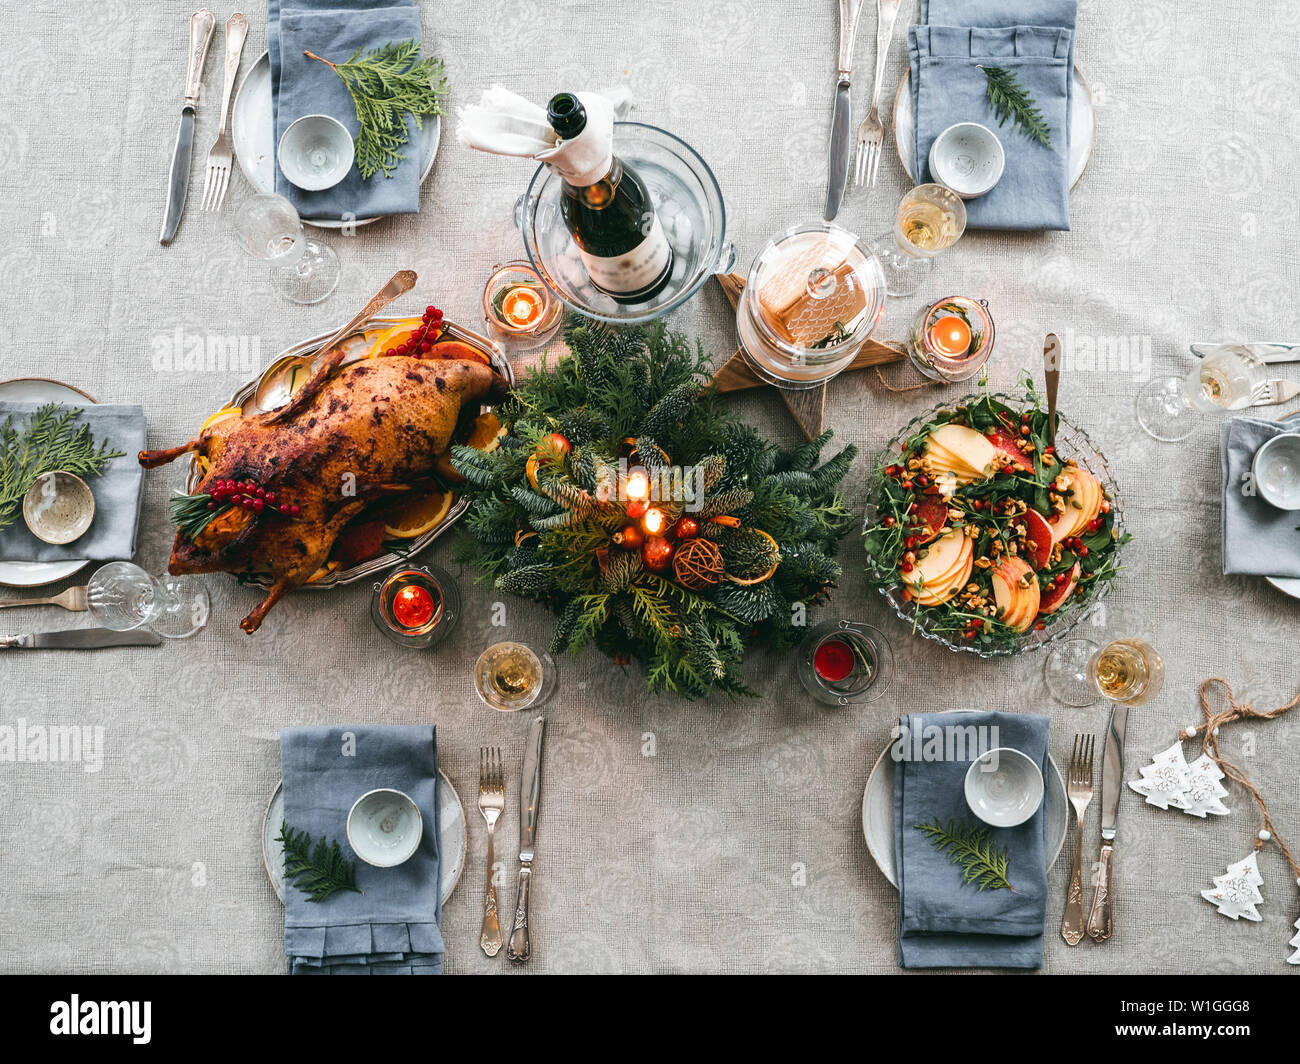 Haut de la vue de la table servie pour le dîner de Noël. Belle table servi avec salade de canard, soutenus, les décorations, les branches de sapin. Maison de vacances définition Banque D'Images